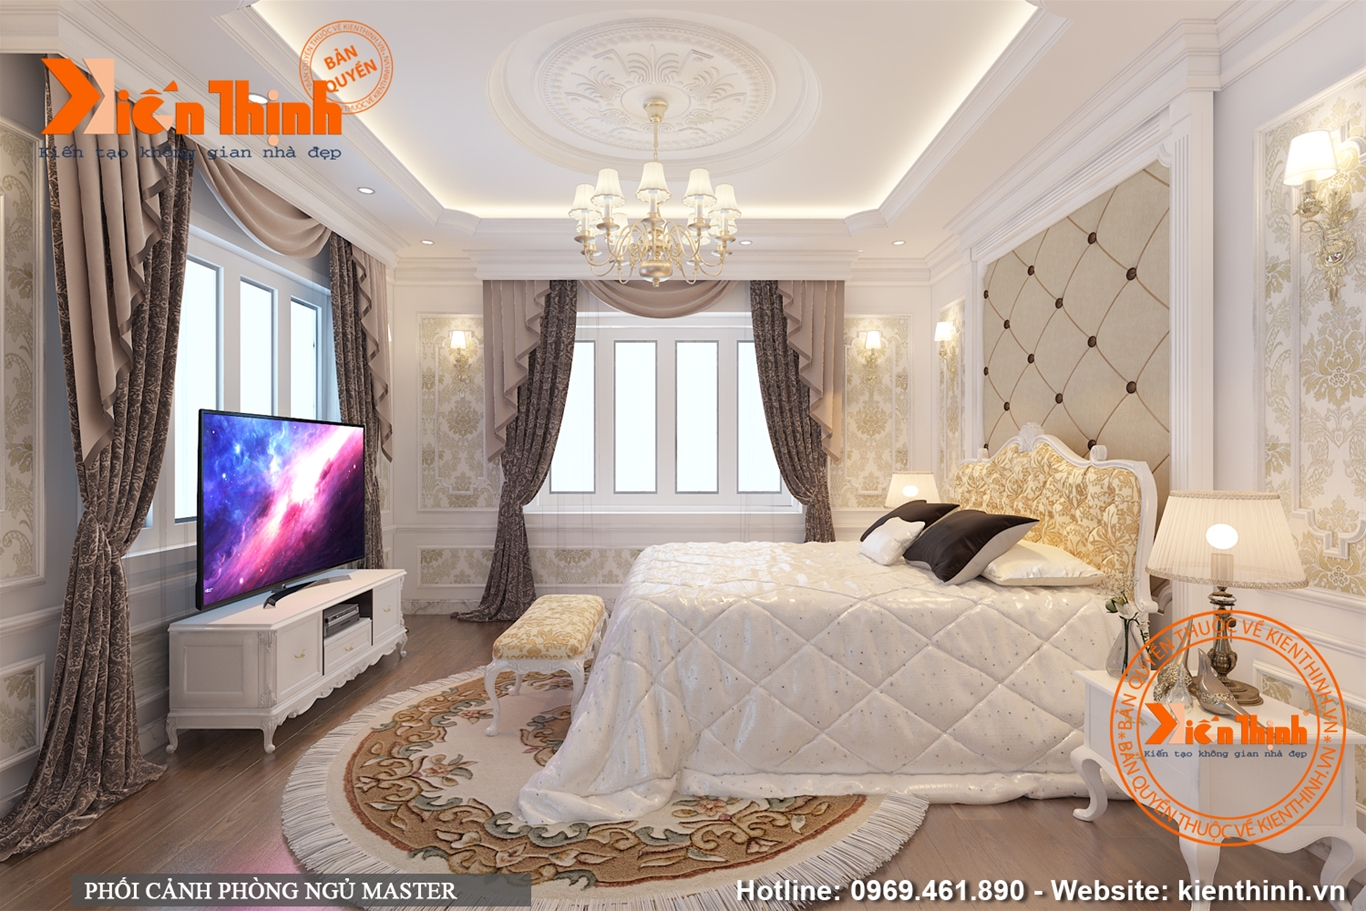 Thiết kế nội thất phòng ngủ bằng gỗ tự nhiên phong cách tân cổ điển đẹp 09